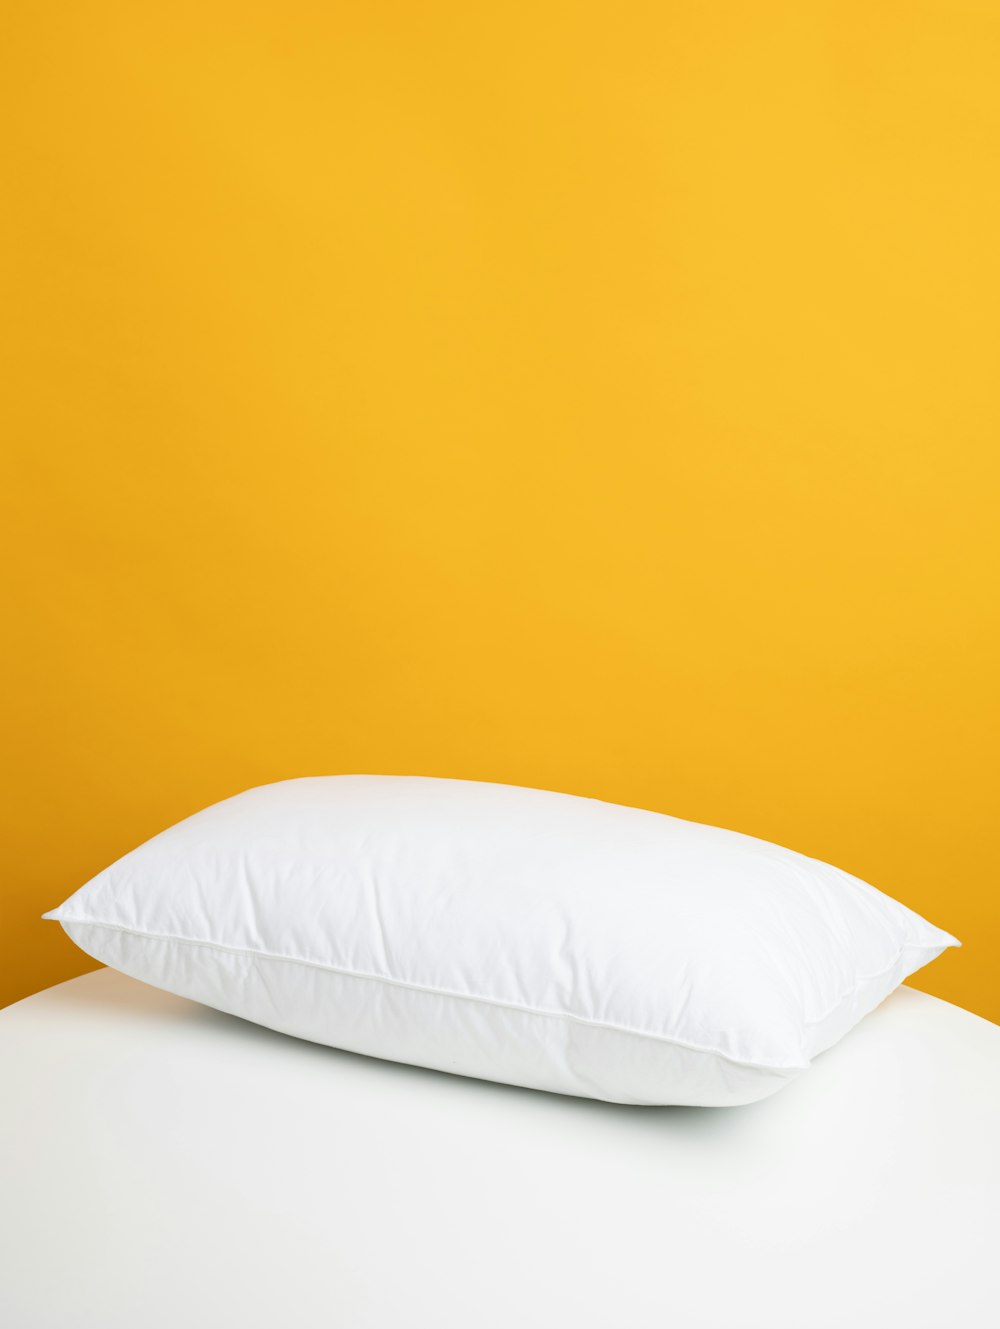 almohada blanca sobre cama blanca